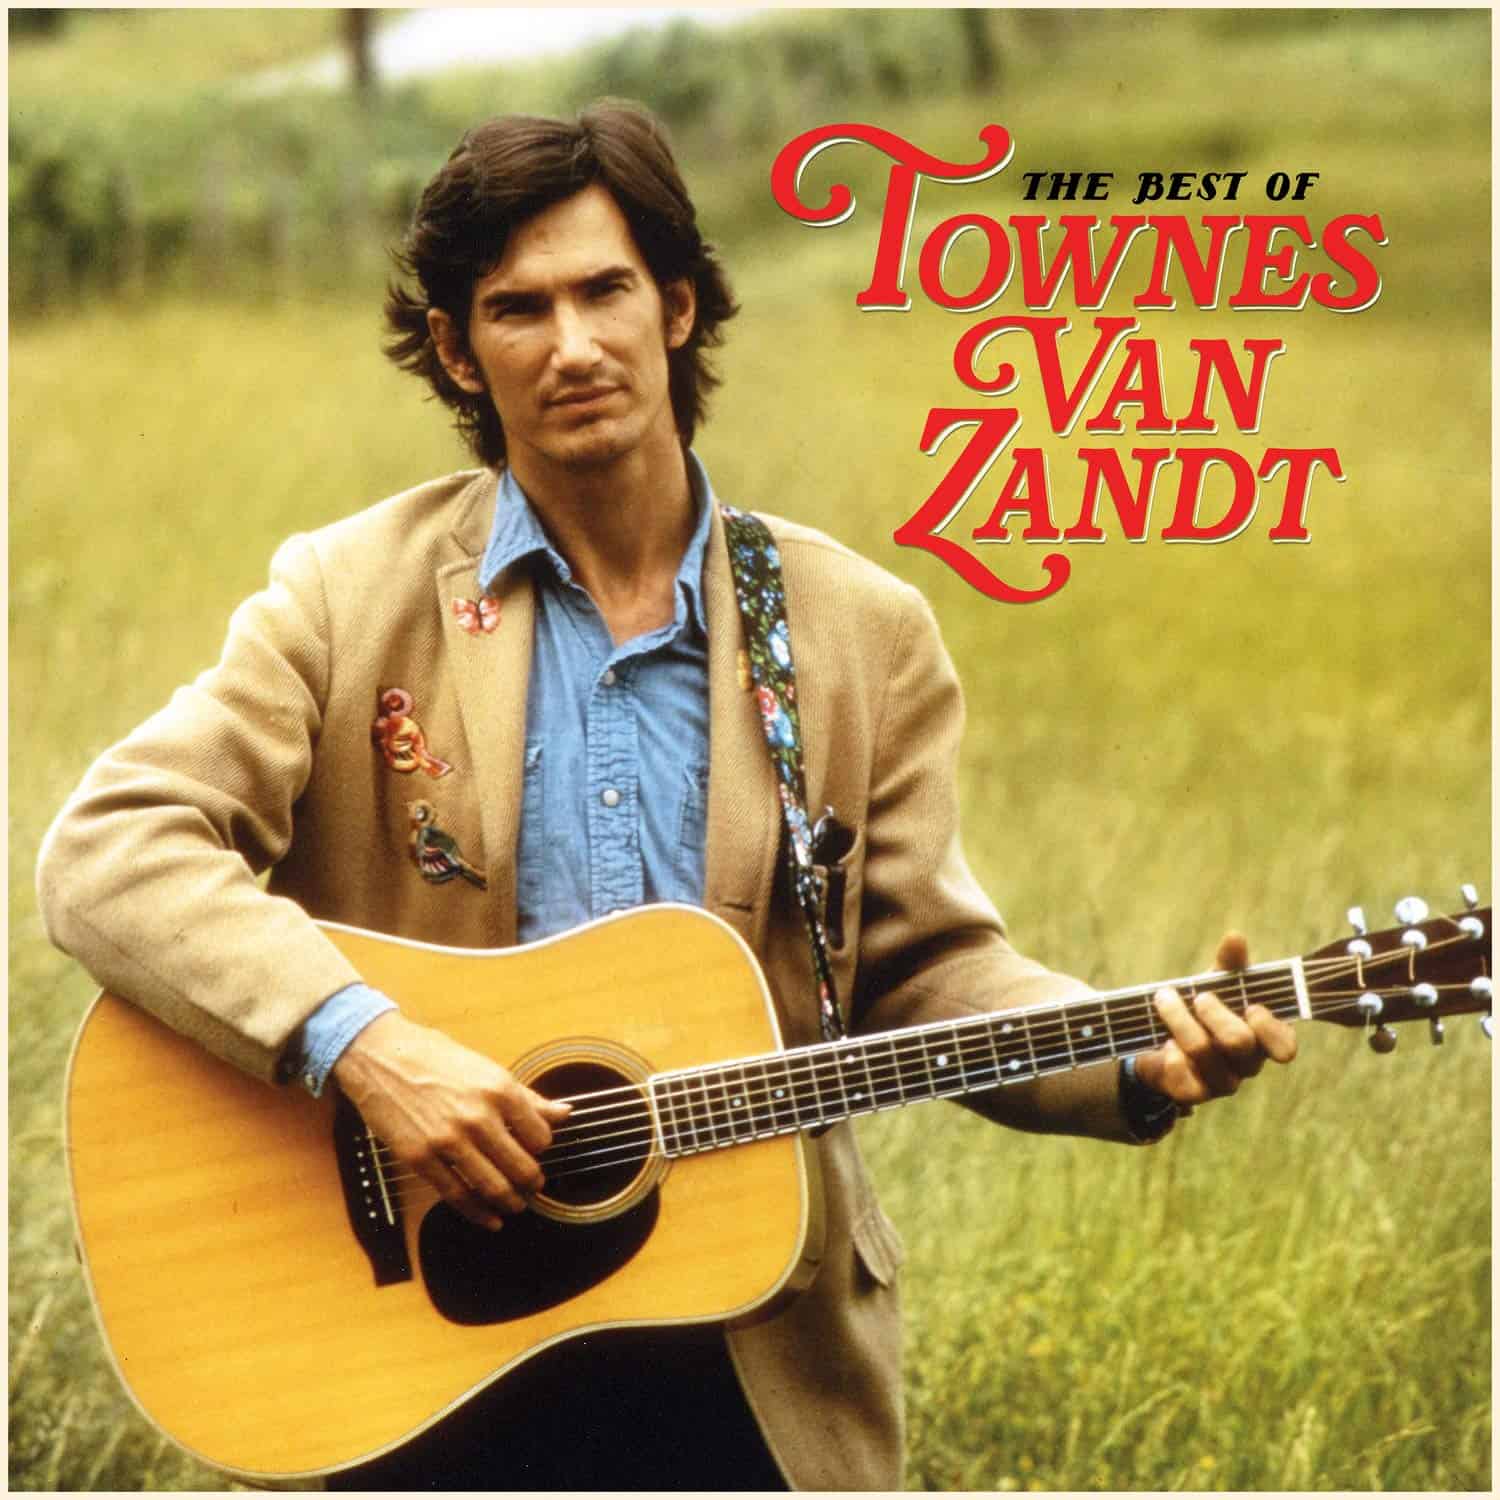 Best-Of-Townes-Van-Zandt-vinyl-record-album-front